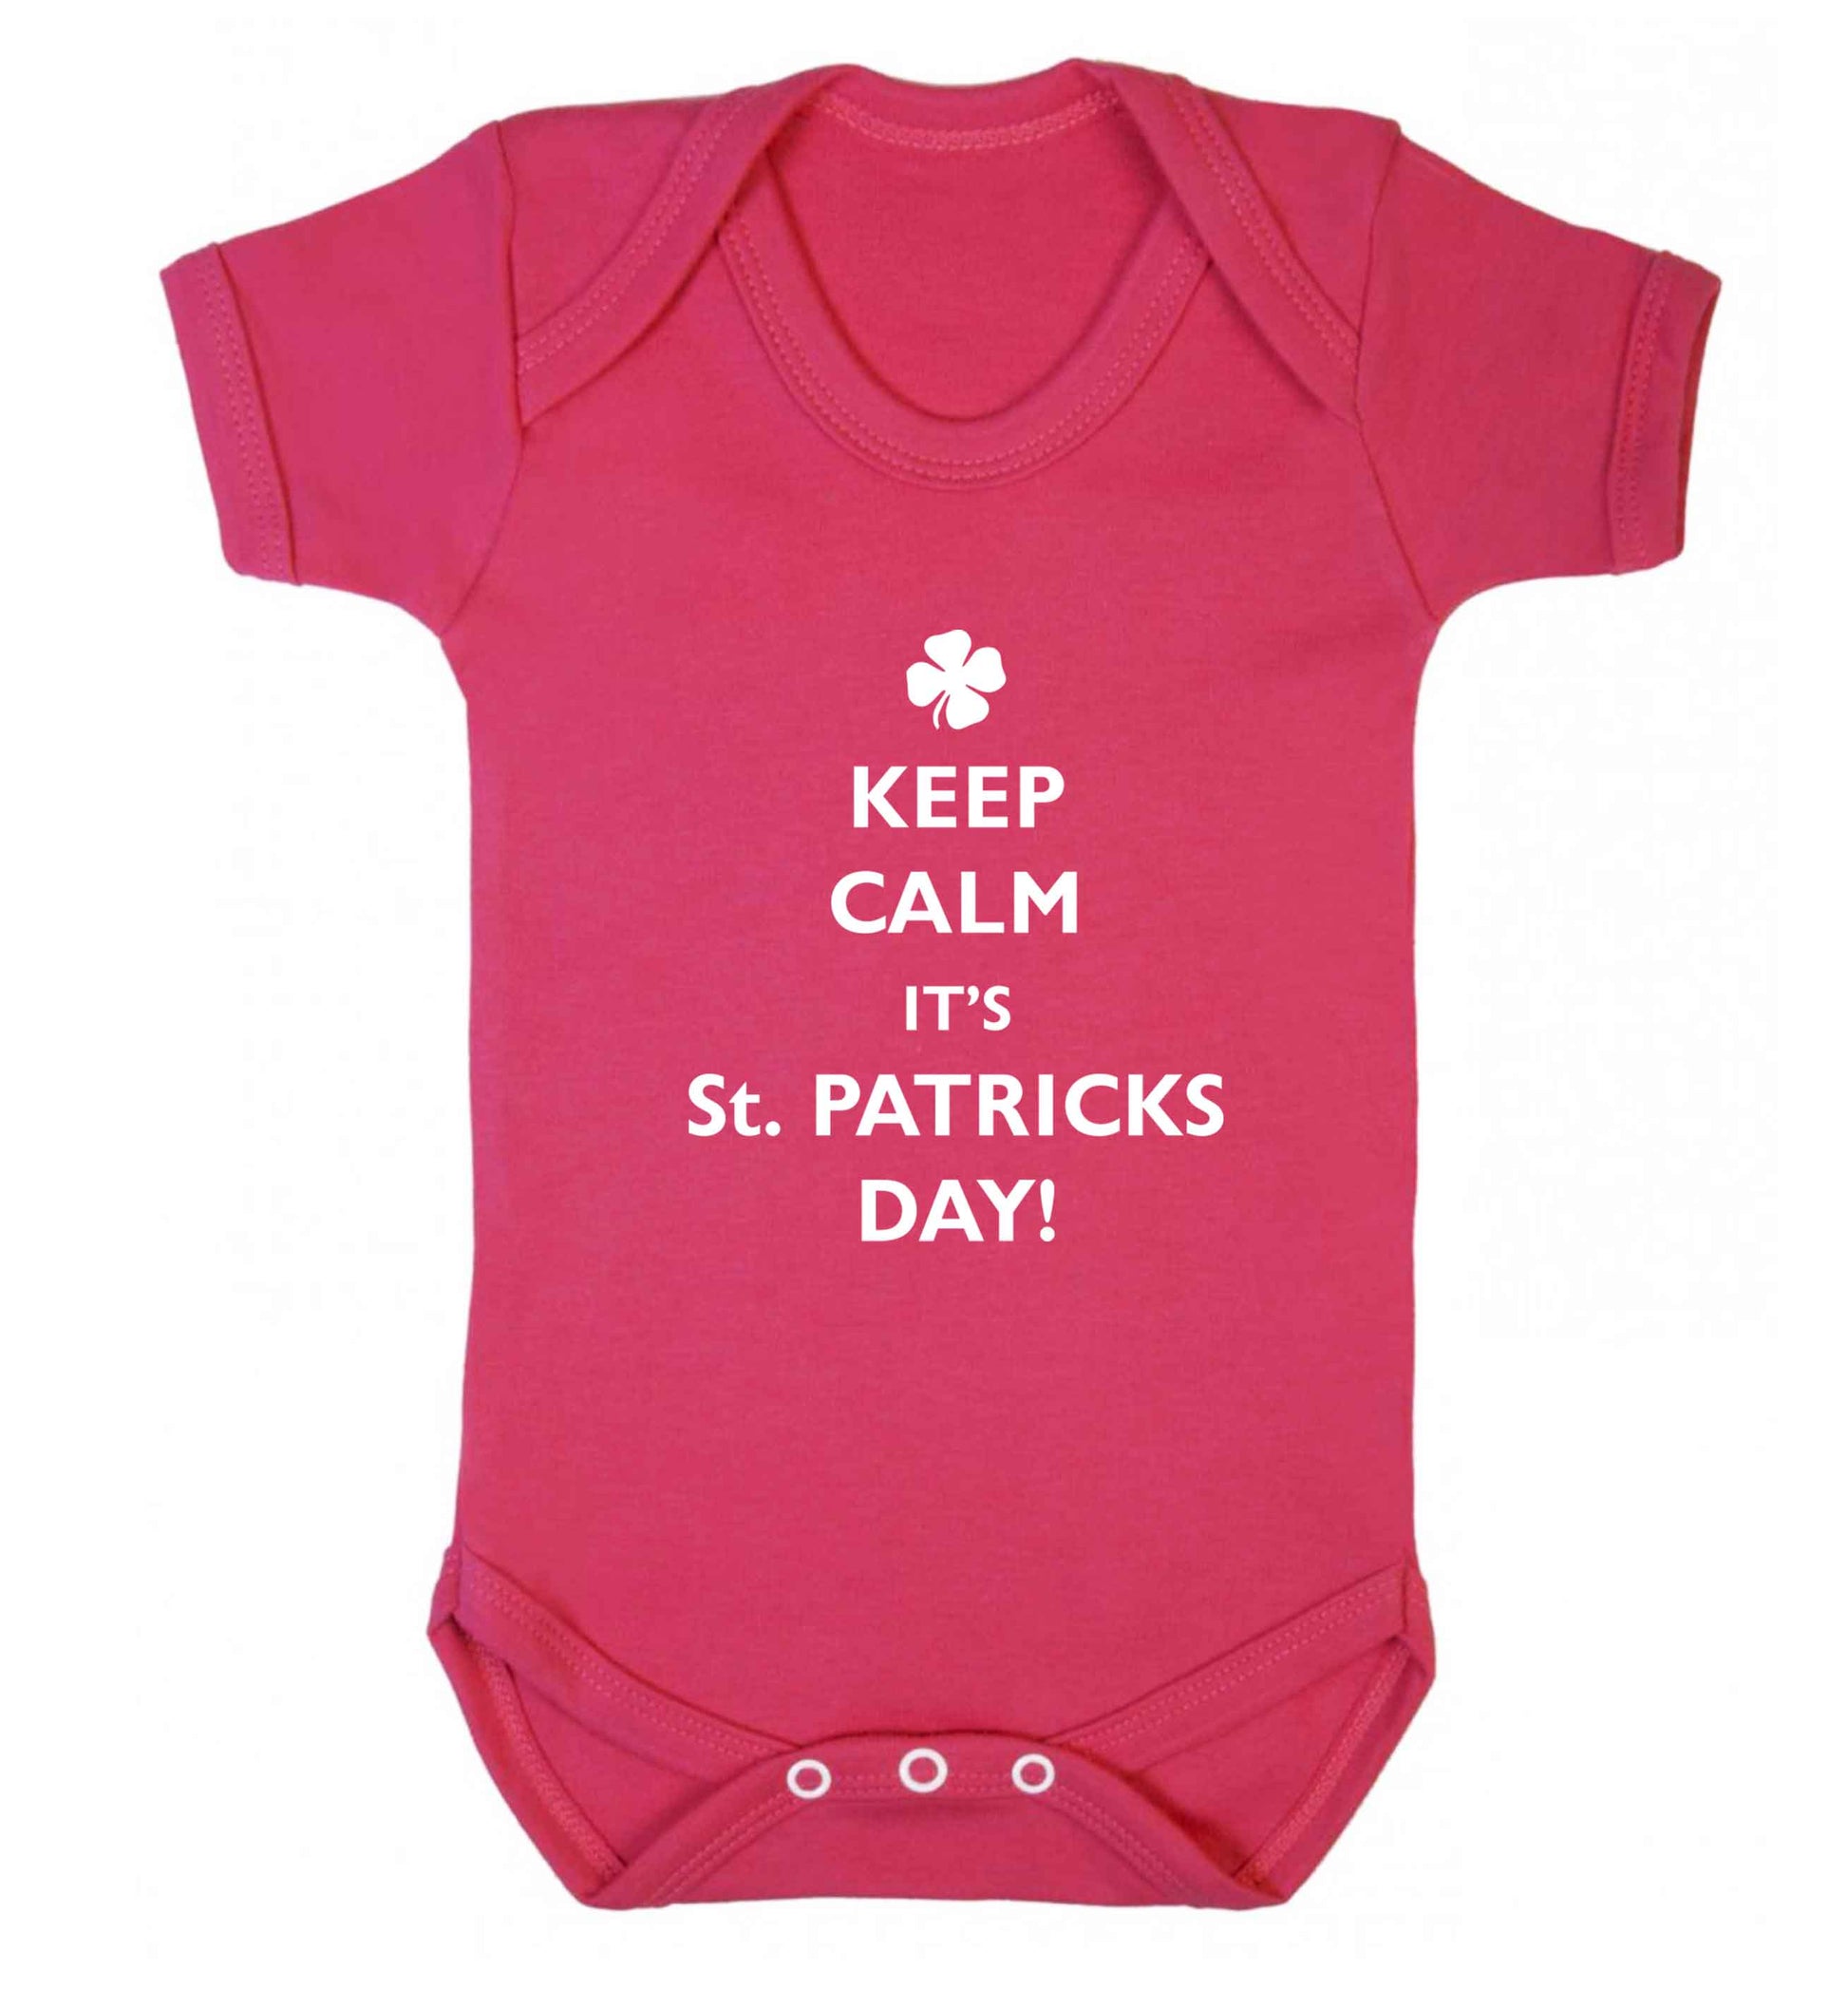 Keep calm it's St.Patricks day baby vest dark pink 18-24 months